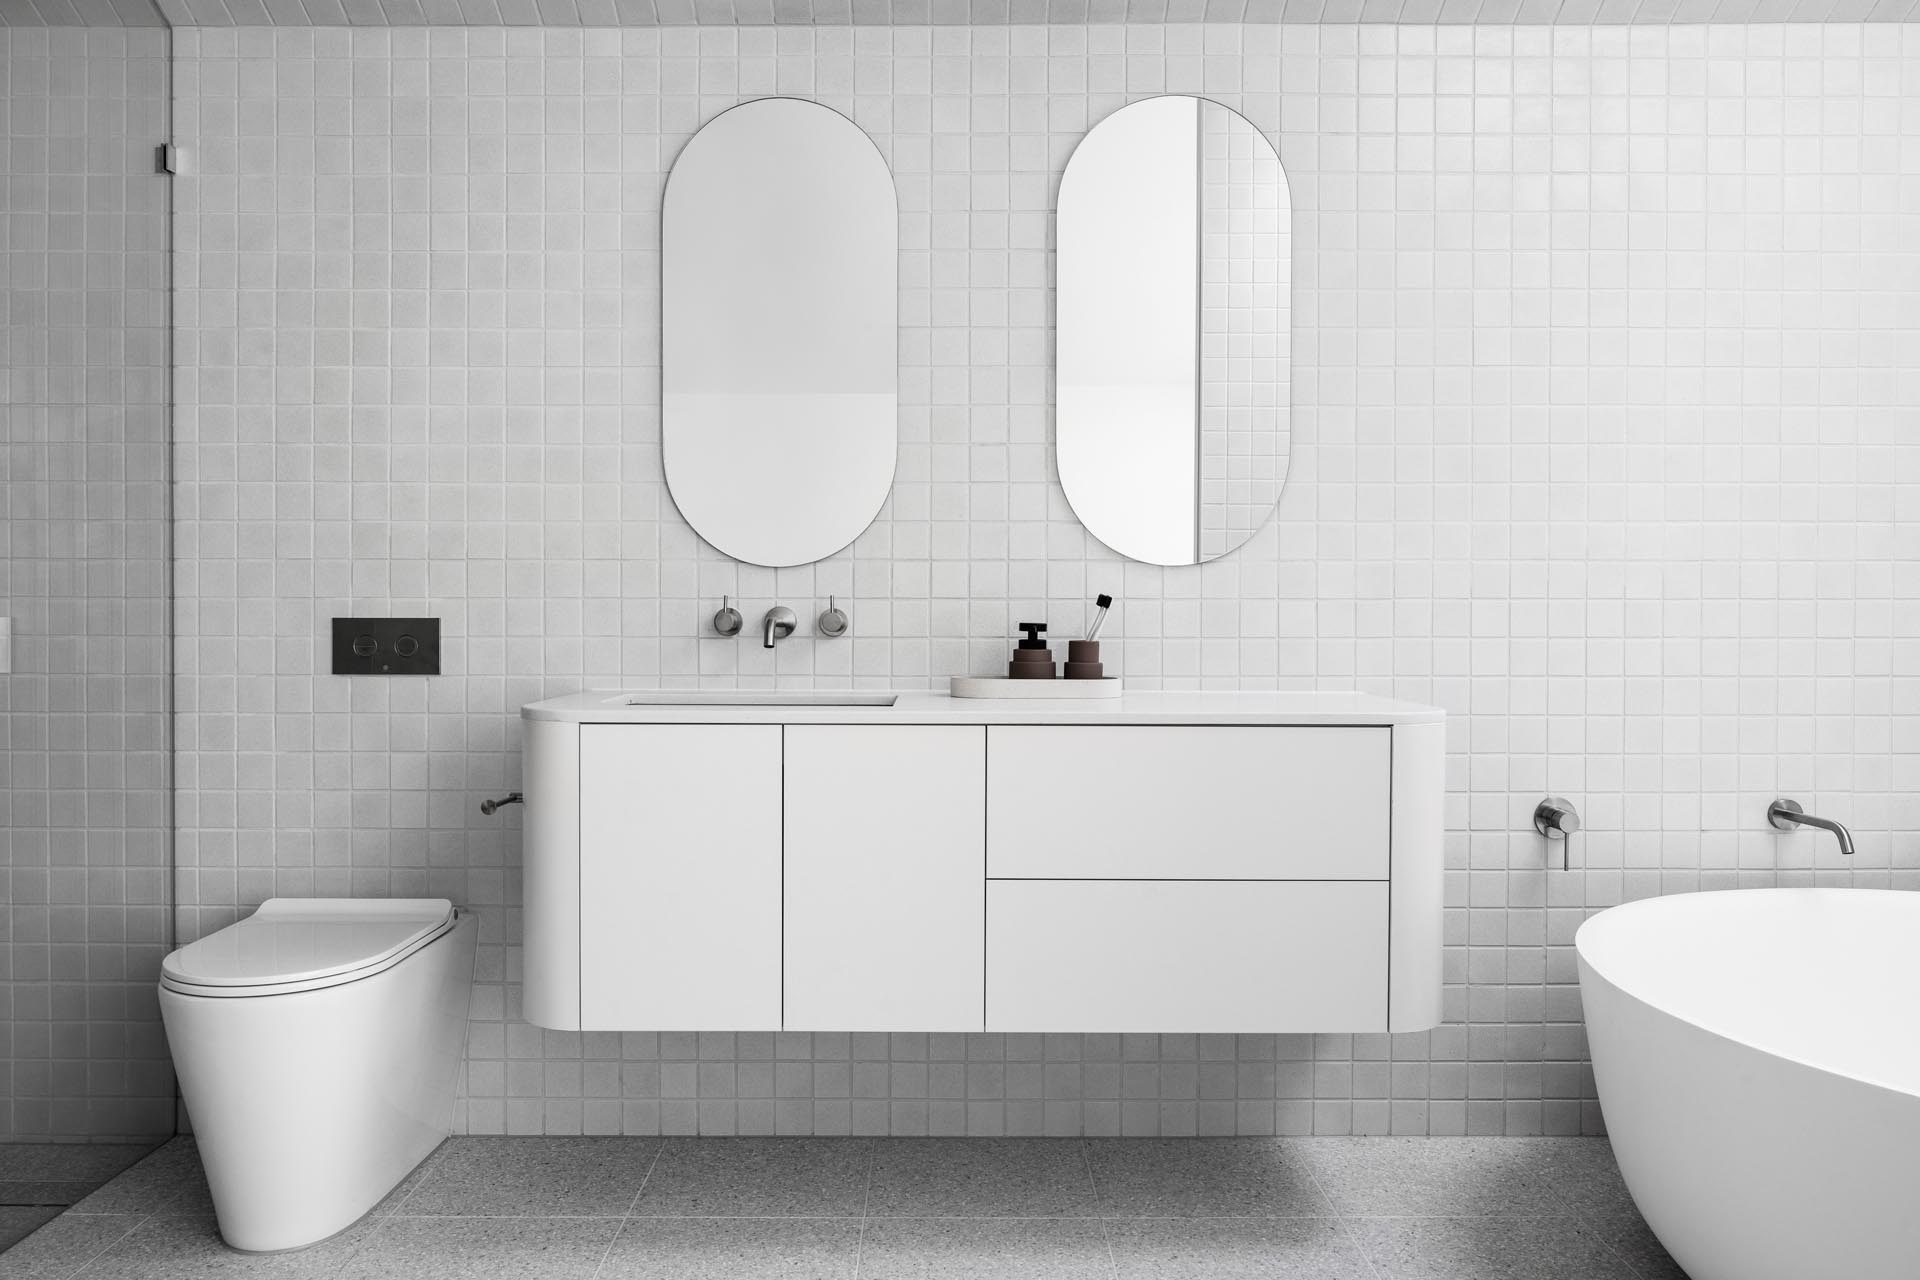 В этой современной ванной комнате квадратная серая плитка покрывает стены и пол, а зеркала в форме таблеток висят над плавающим белым туалетным столиком с изогнутыми углами. Один конец ванной комнаты отведен под душ, а в другом - круглая отдельно стоящая ванна, расположенная под потолочным окном.